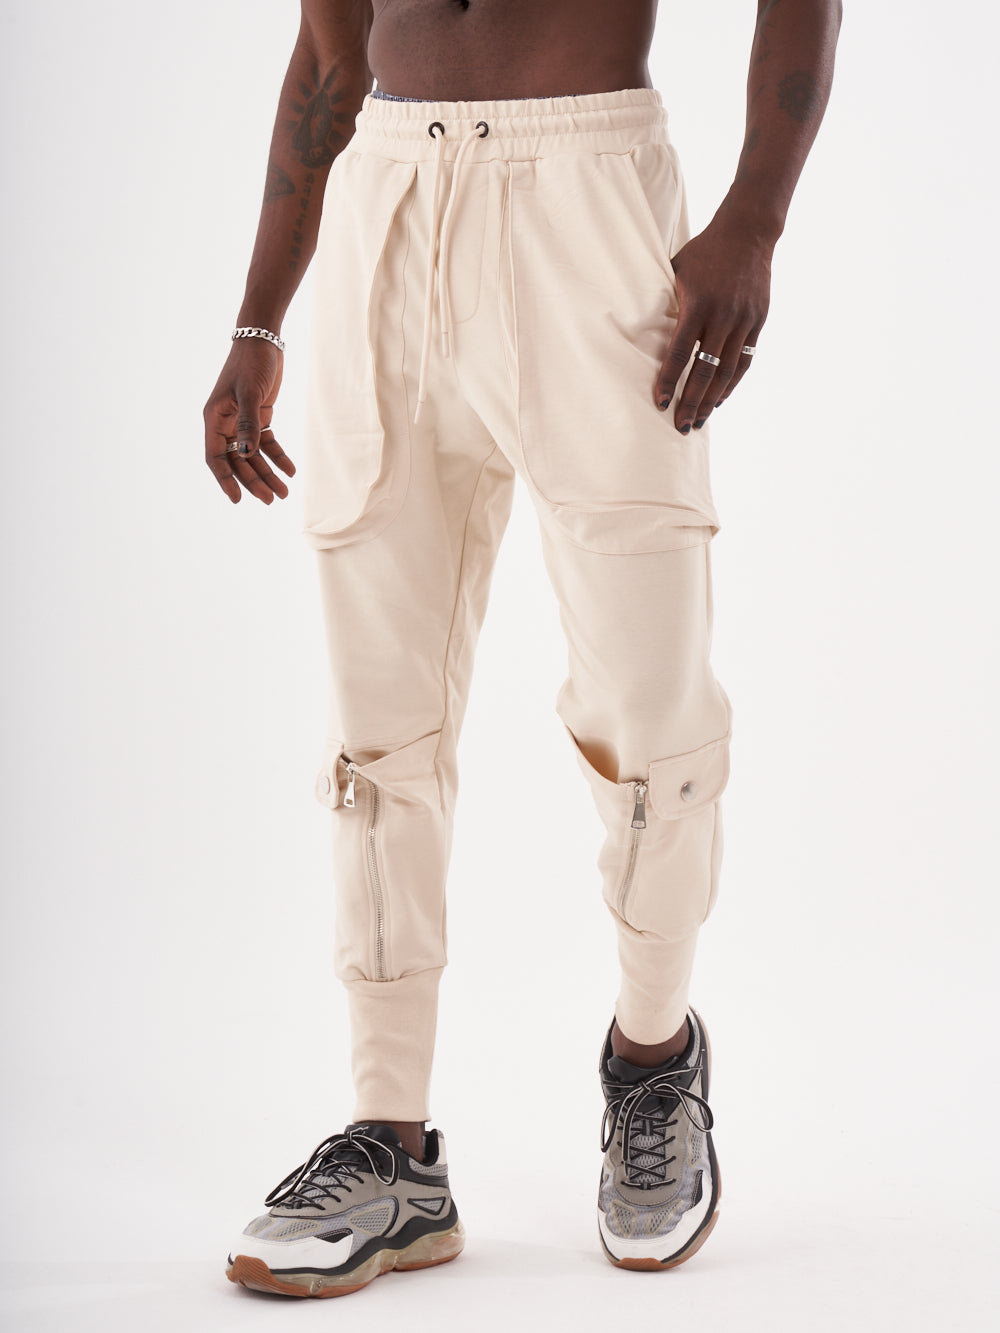 SERNES Sweatpants Men Style Streetwear Joggers - for &